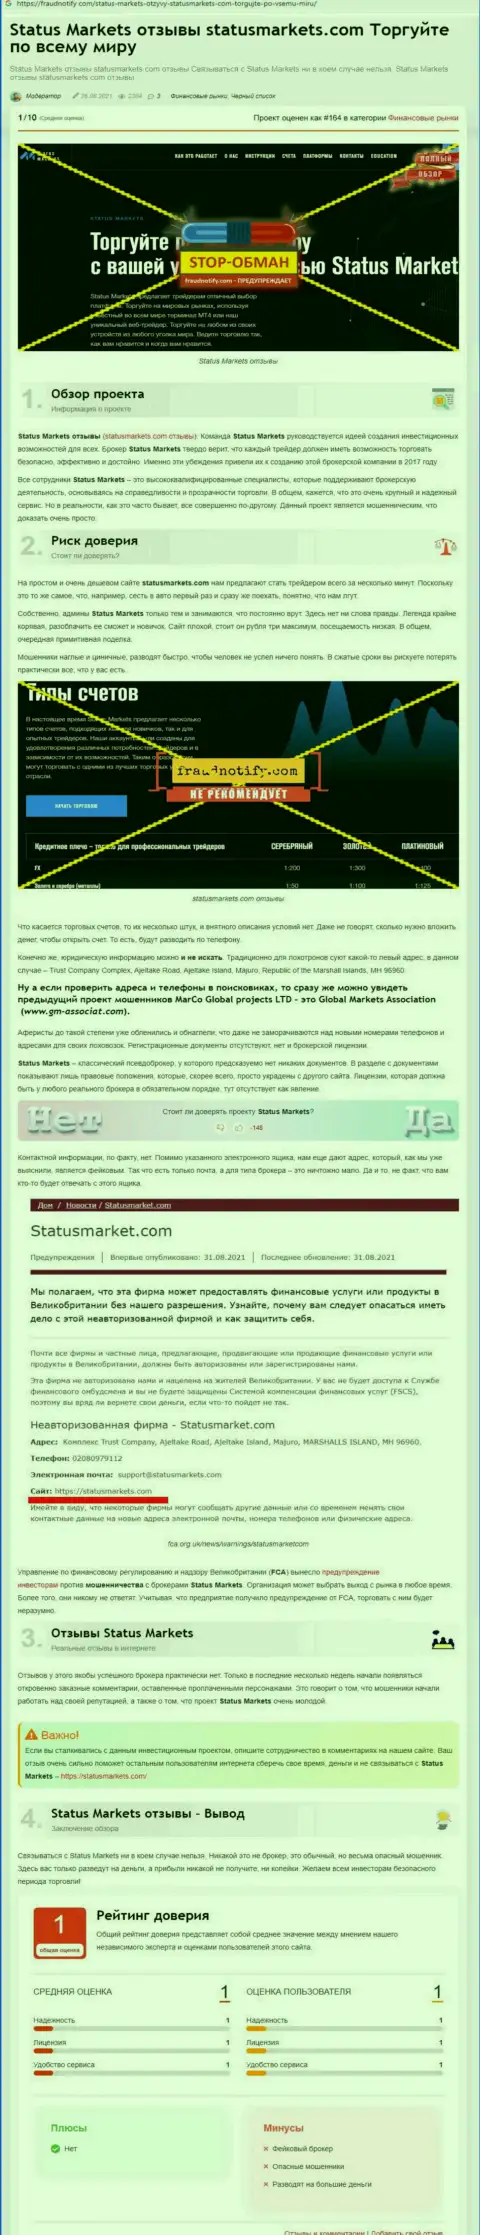 В компании StatusMarkets жульничают - факты противозаконных манипуляций (обзор неправомерных действий компании)